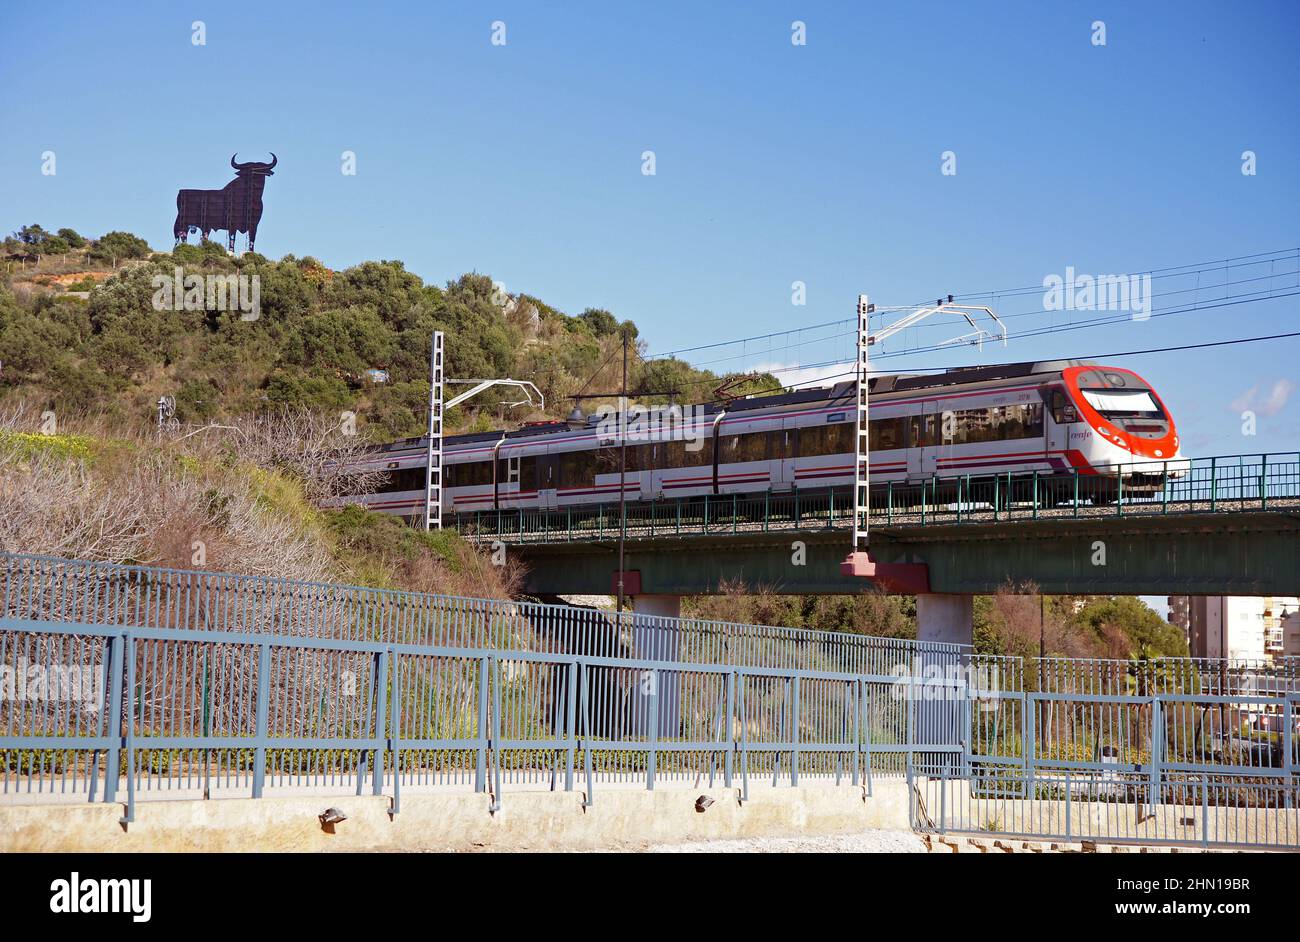 Andalusien in Spanien: Die Eisenbahnlinie in der Nähe der Stadt Fuengirola. Man beachte den Osborne-Stier (Toro d'Osborne) am Horizont Stockfoto